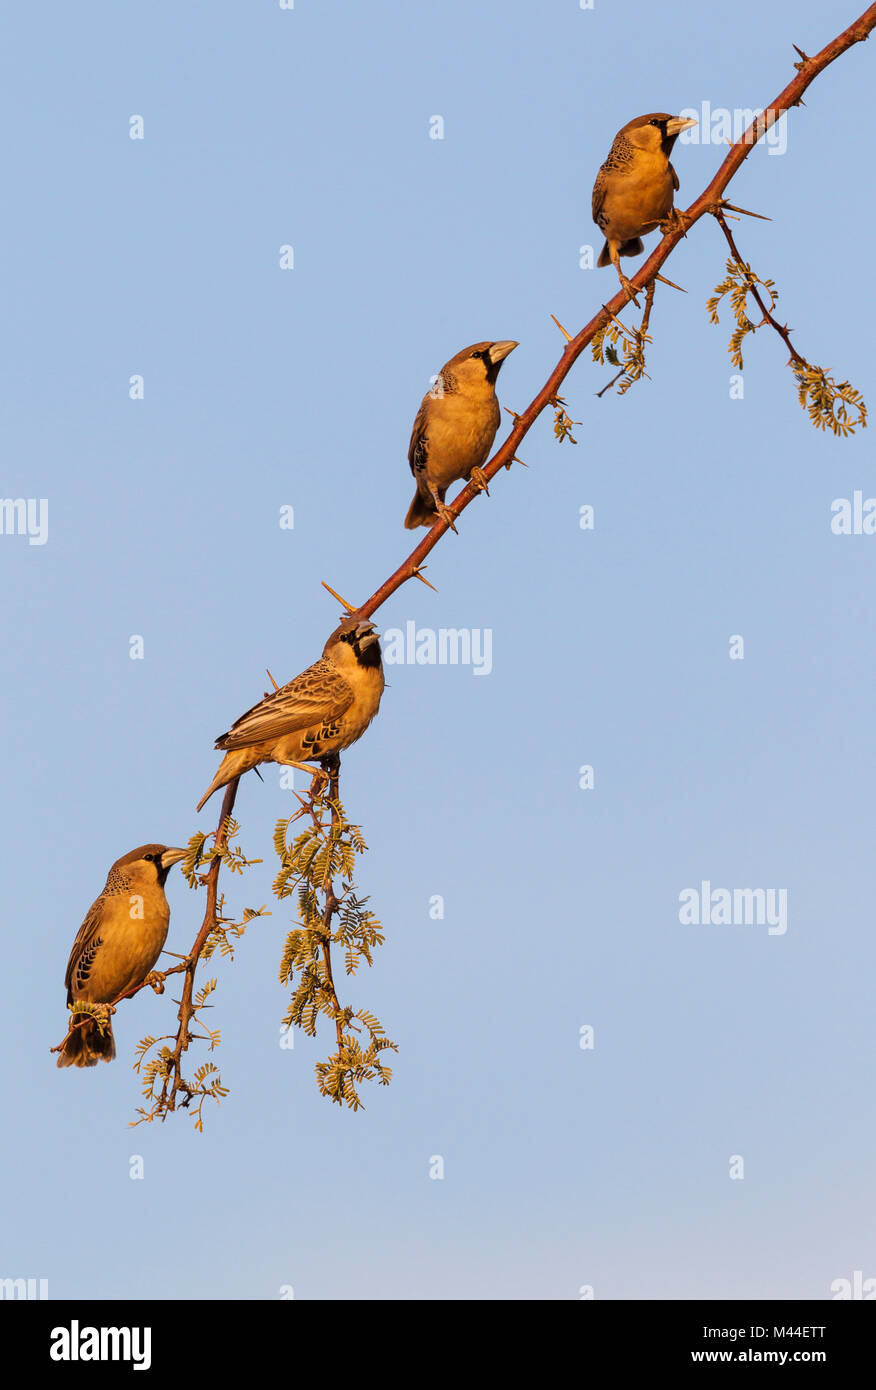 Sociable Weaver (Philetairus socius). Männer in der Nähe von ihrem Nest, in das letzte Licht des Abends. Kalahari Wüste, Kgalagadi Transfrontier Park, Südafrika Stockfoto